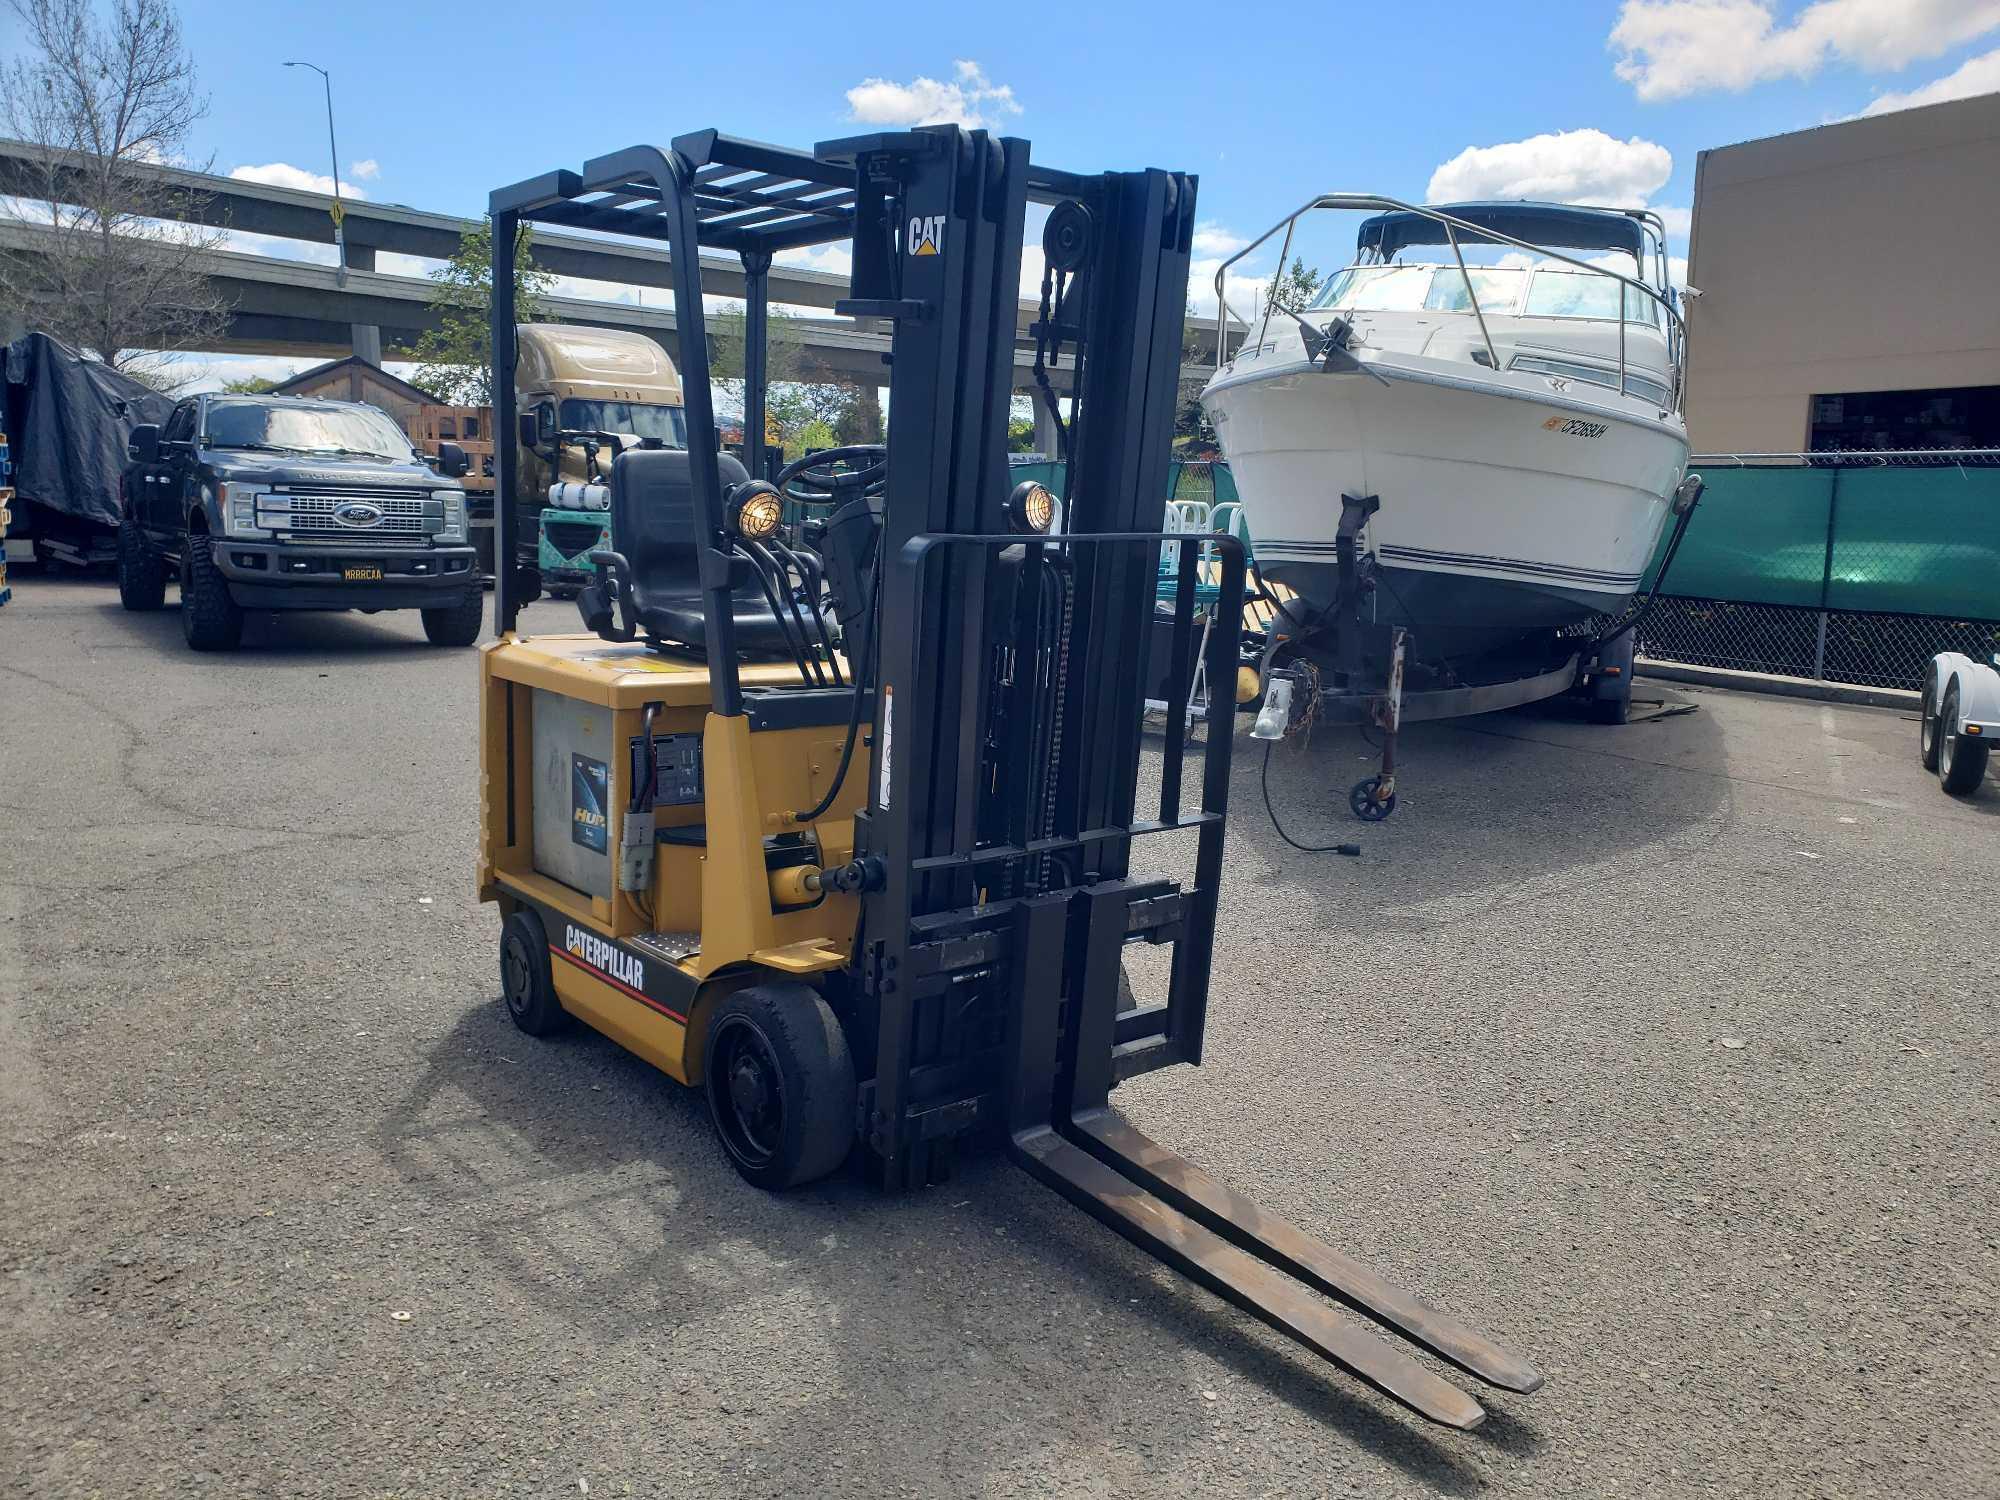 CATERPILLAR 3,000lbs Capacity 36v Forklift